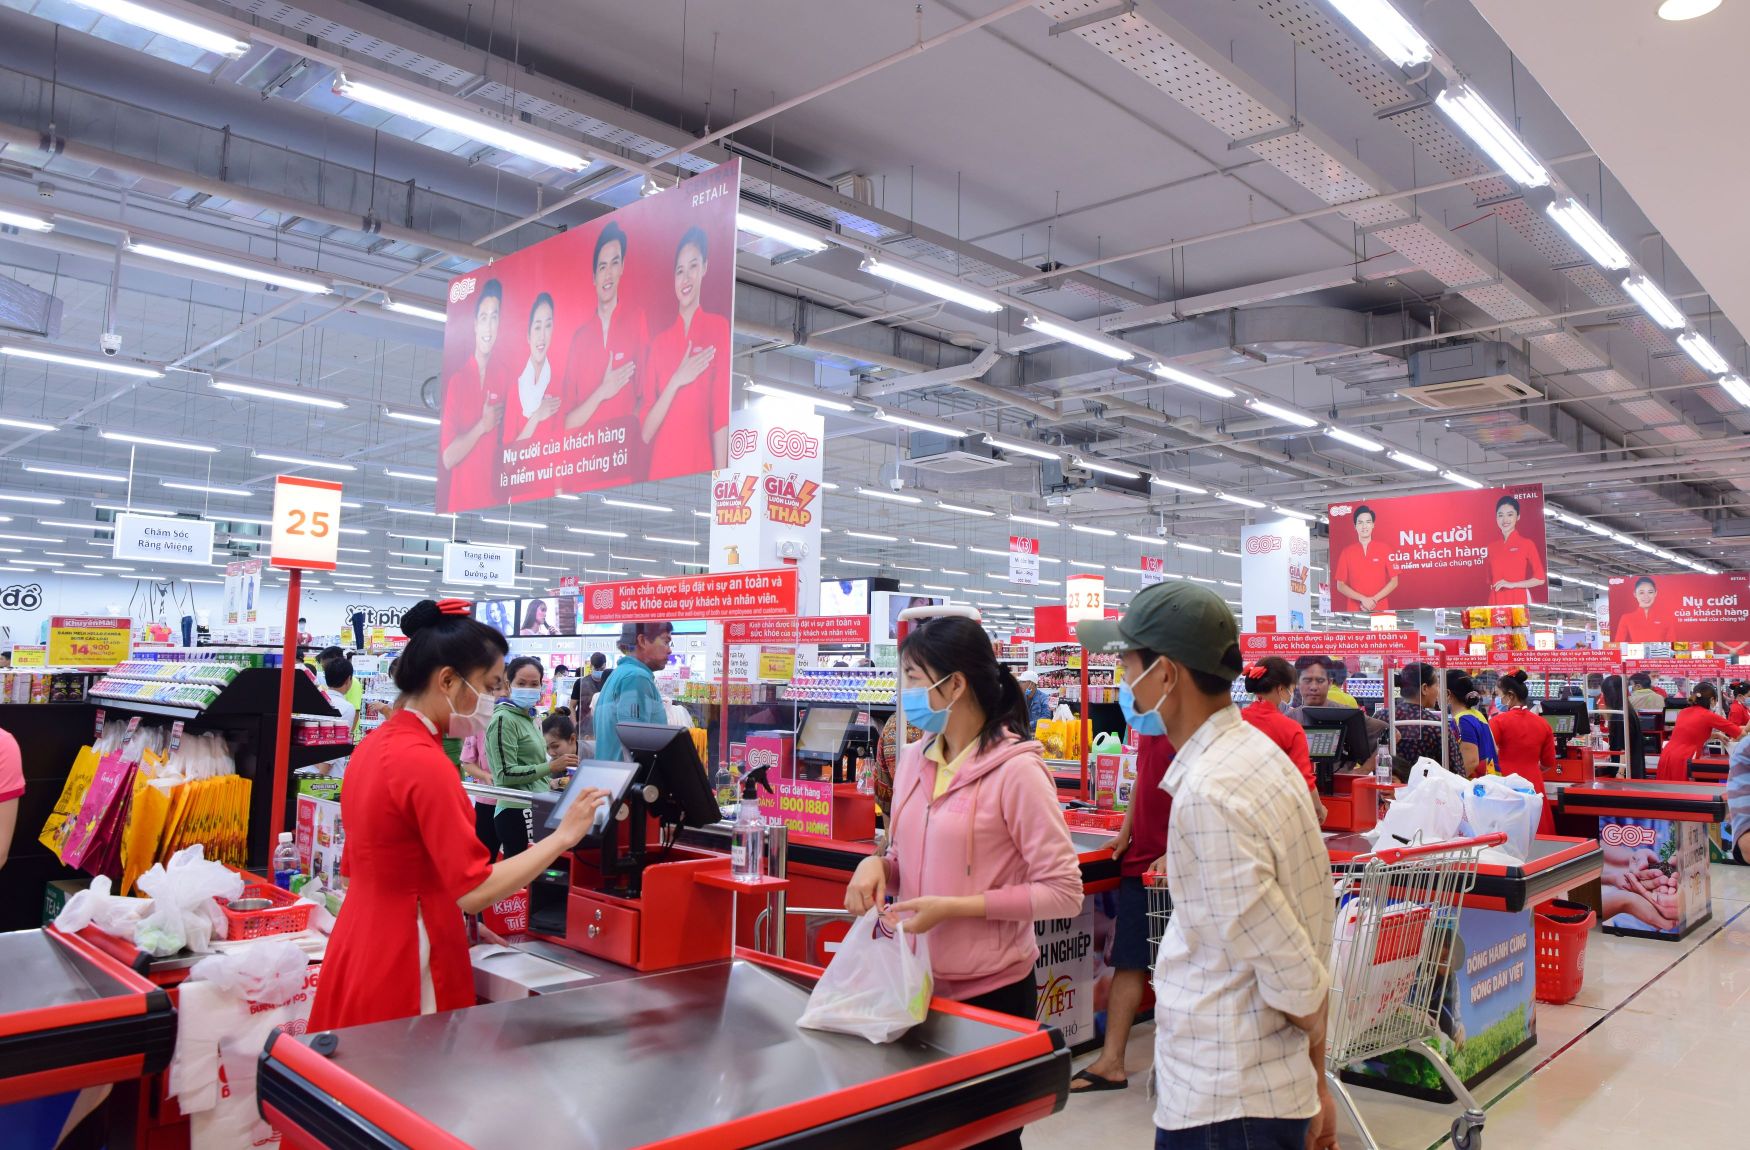 Đại siêu thị Big C 3 Đại siêu thị Big C đổi tên thành Đại siêu thị GO!: Khách hàng được mua sắm trong không gian hiện đại